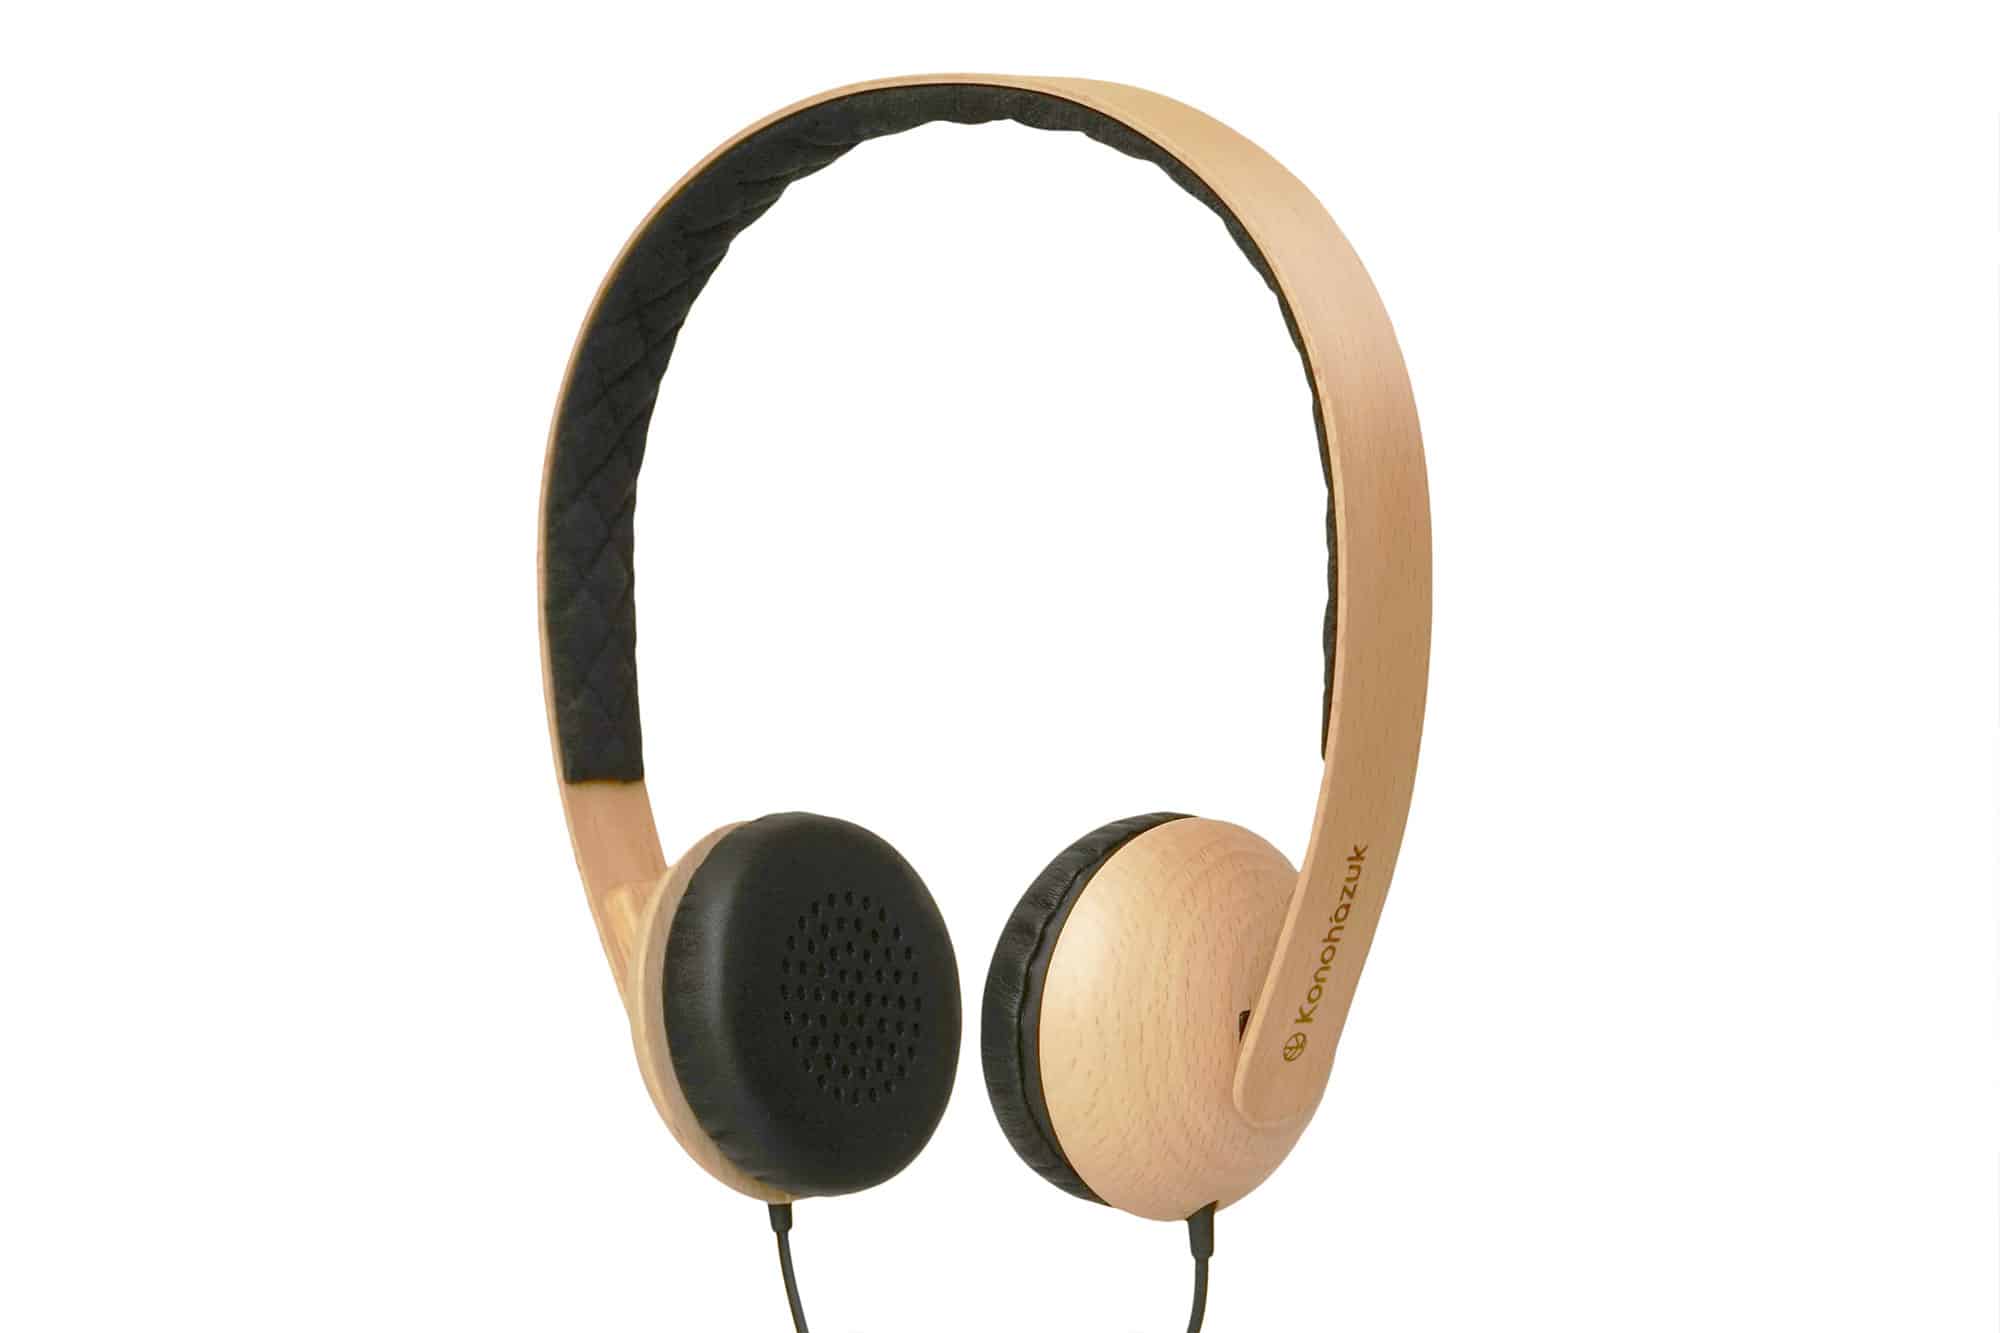 Konohazuk Eco-Friendly Headphones